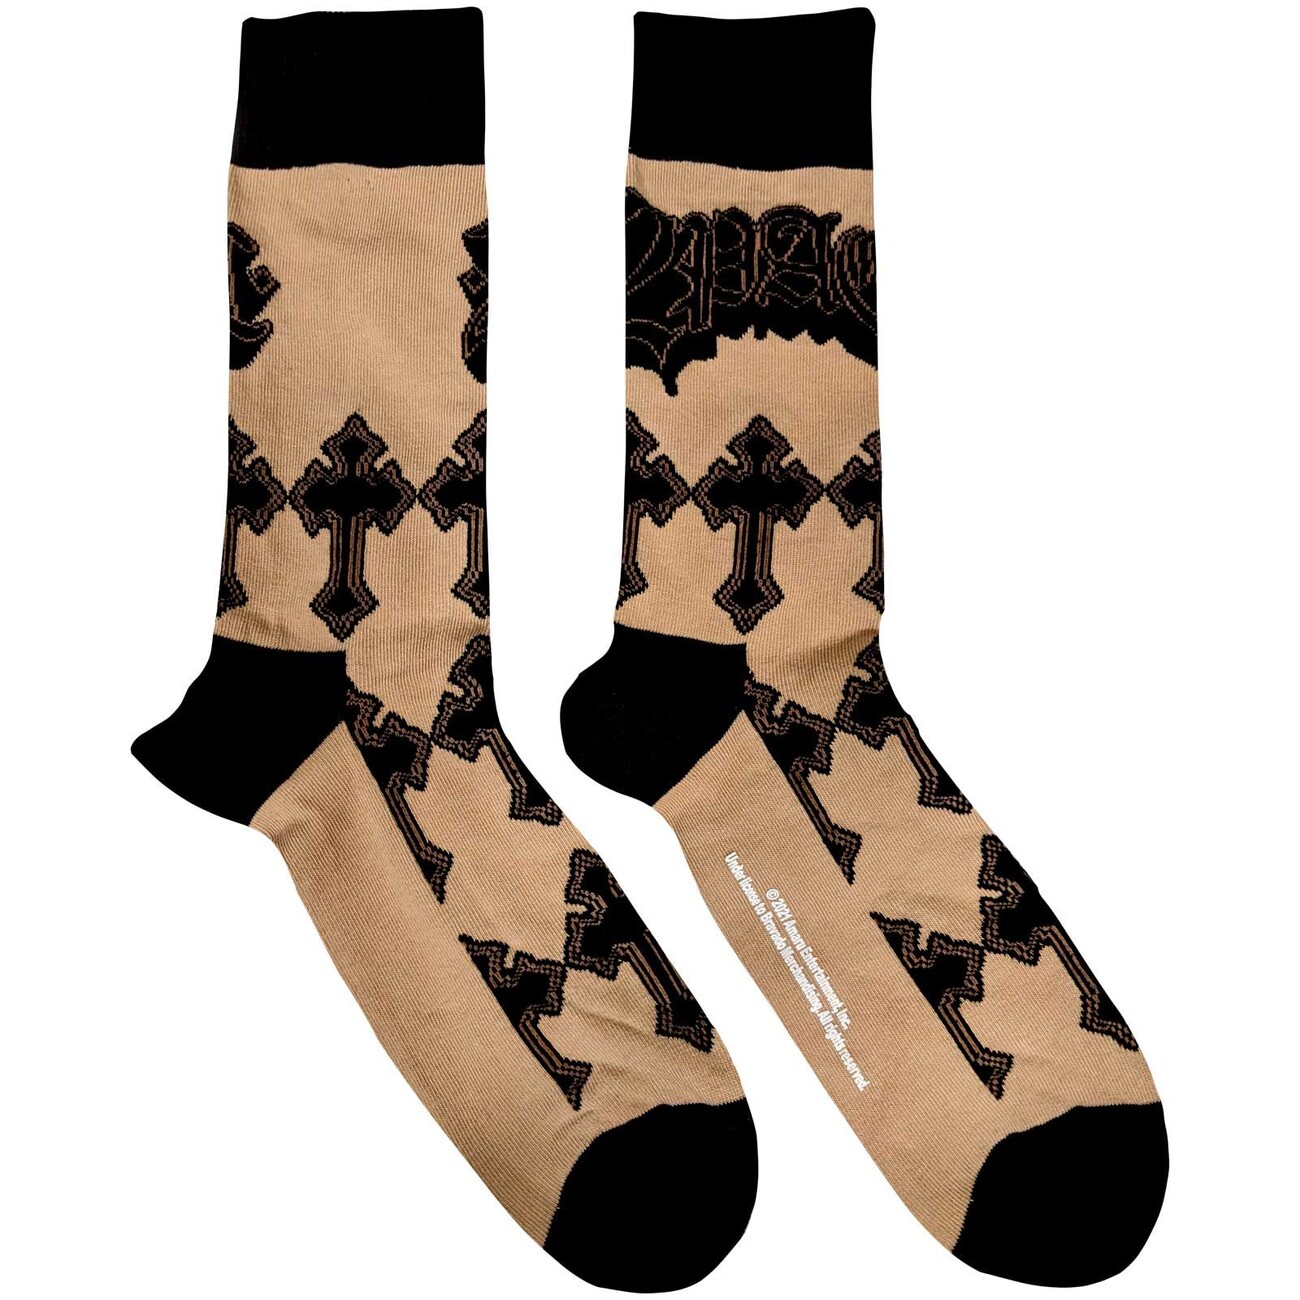 Socken Sand - Tupac - Crosses  Kleidung und Accessoires für Merch-Fans